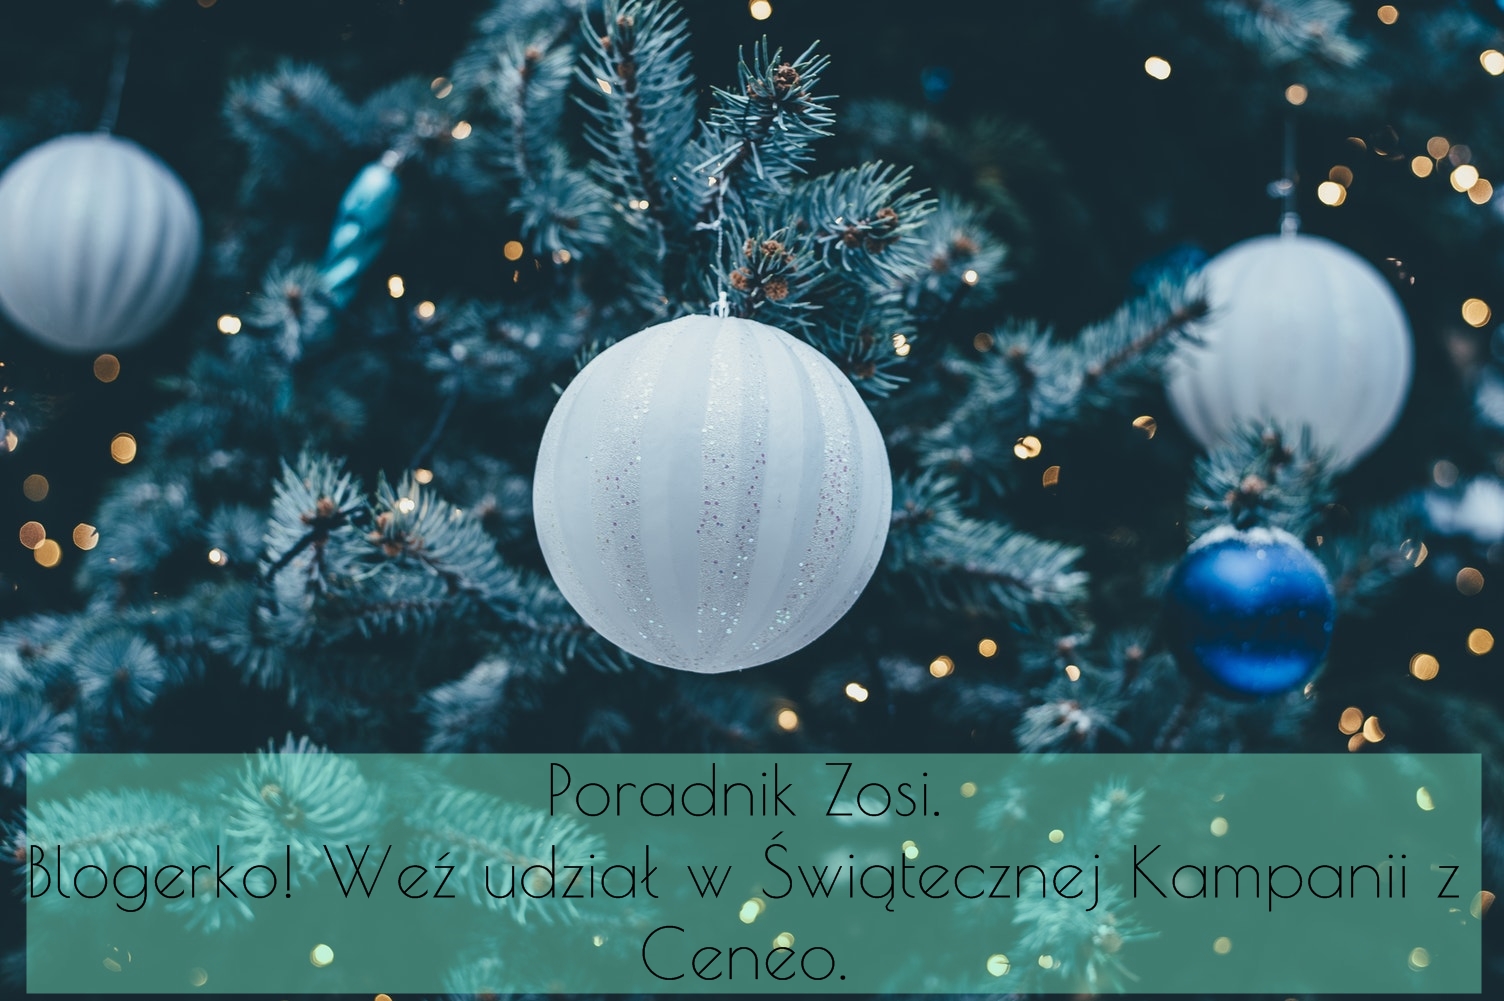 Dorota Pisze.pl: Poradnik Zosi. Blogerko! Weź udział w Świątecznej Kampanii z Ceneo.